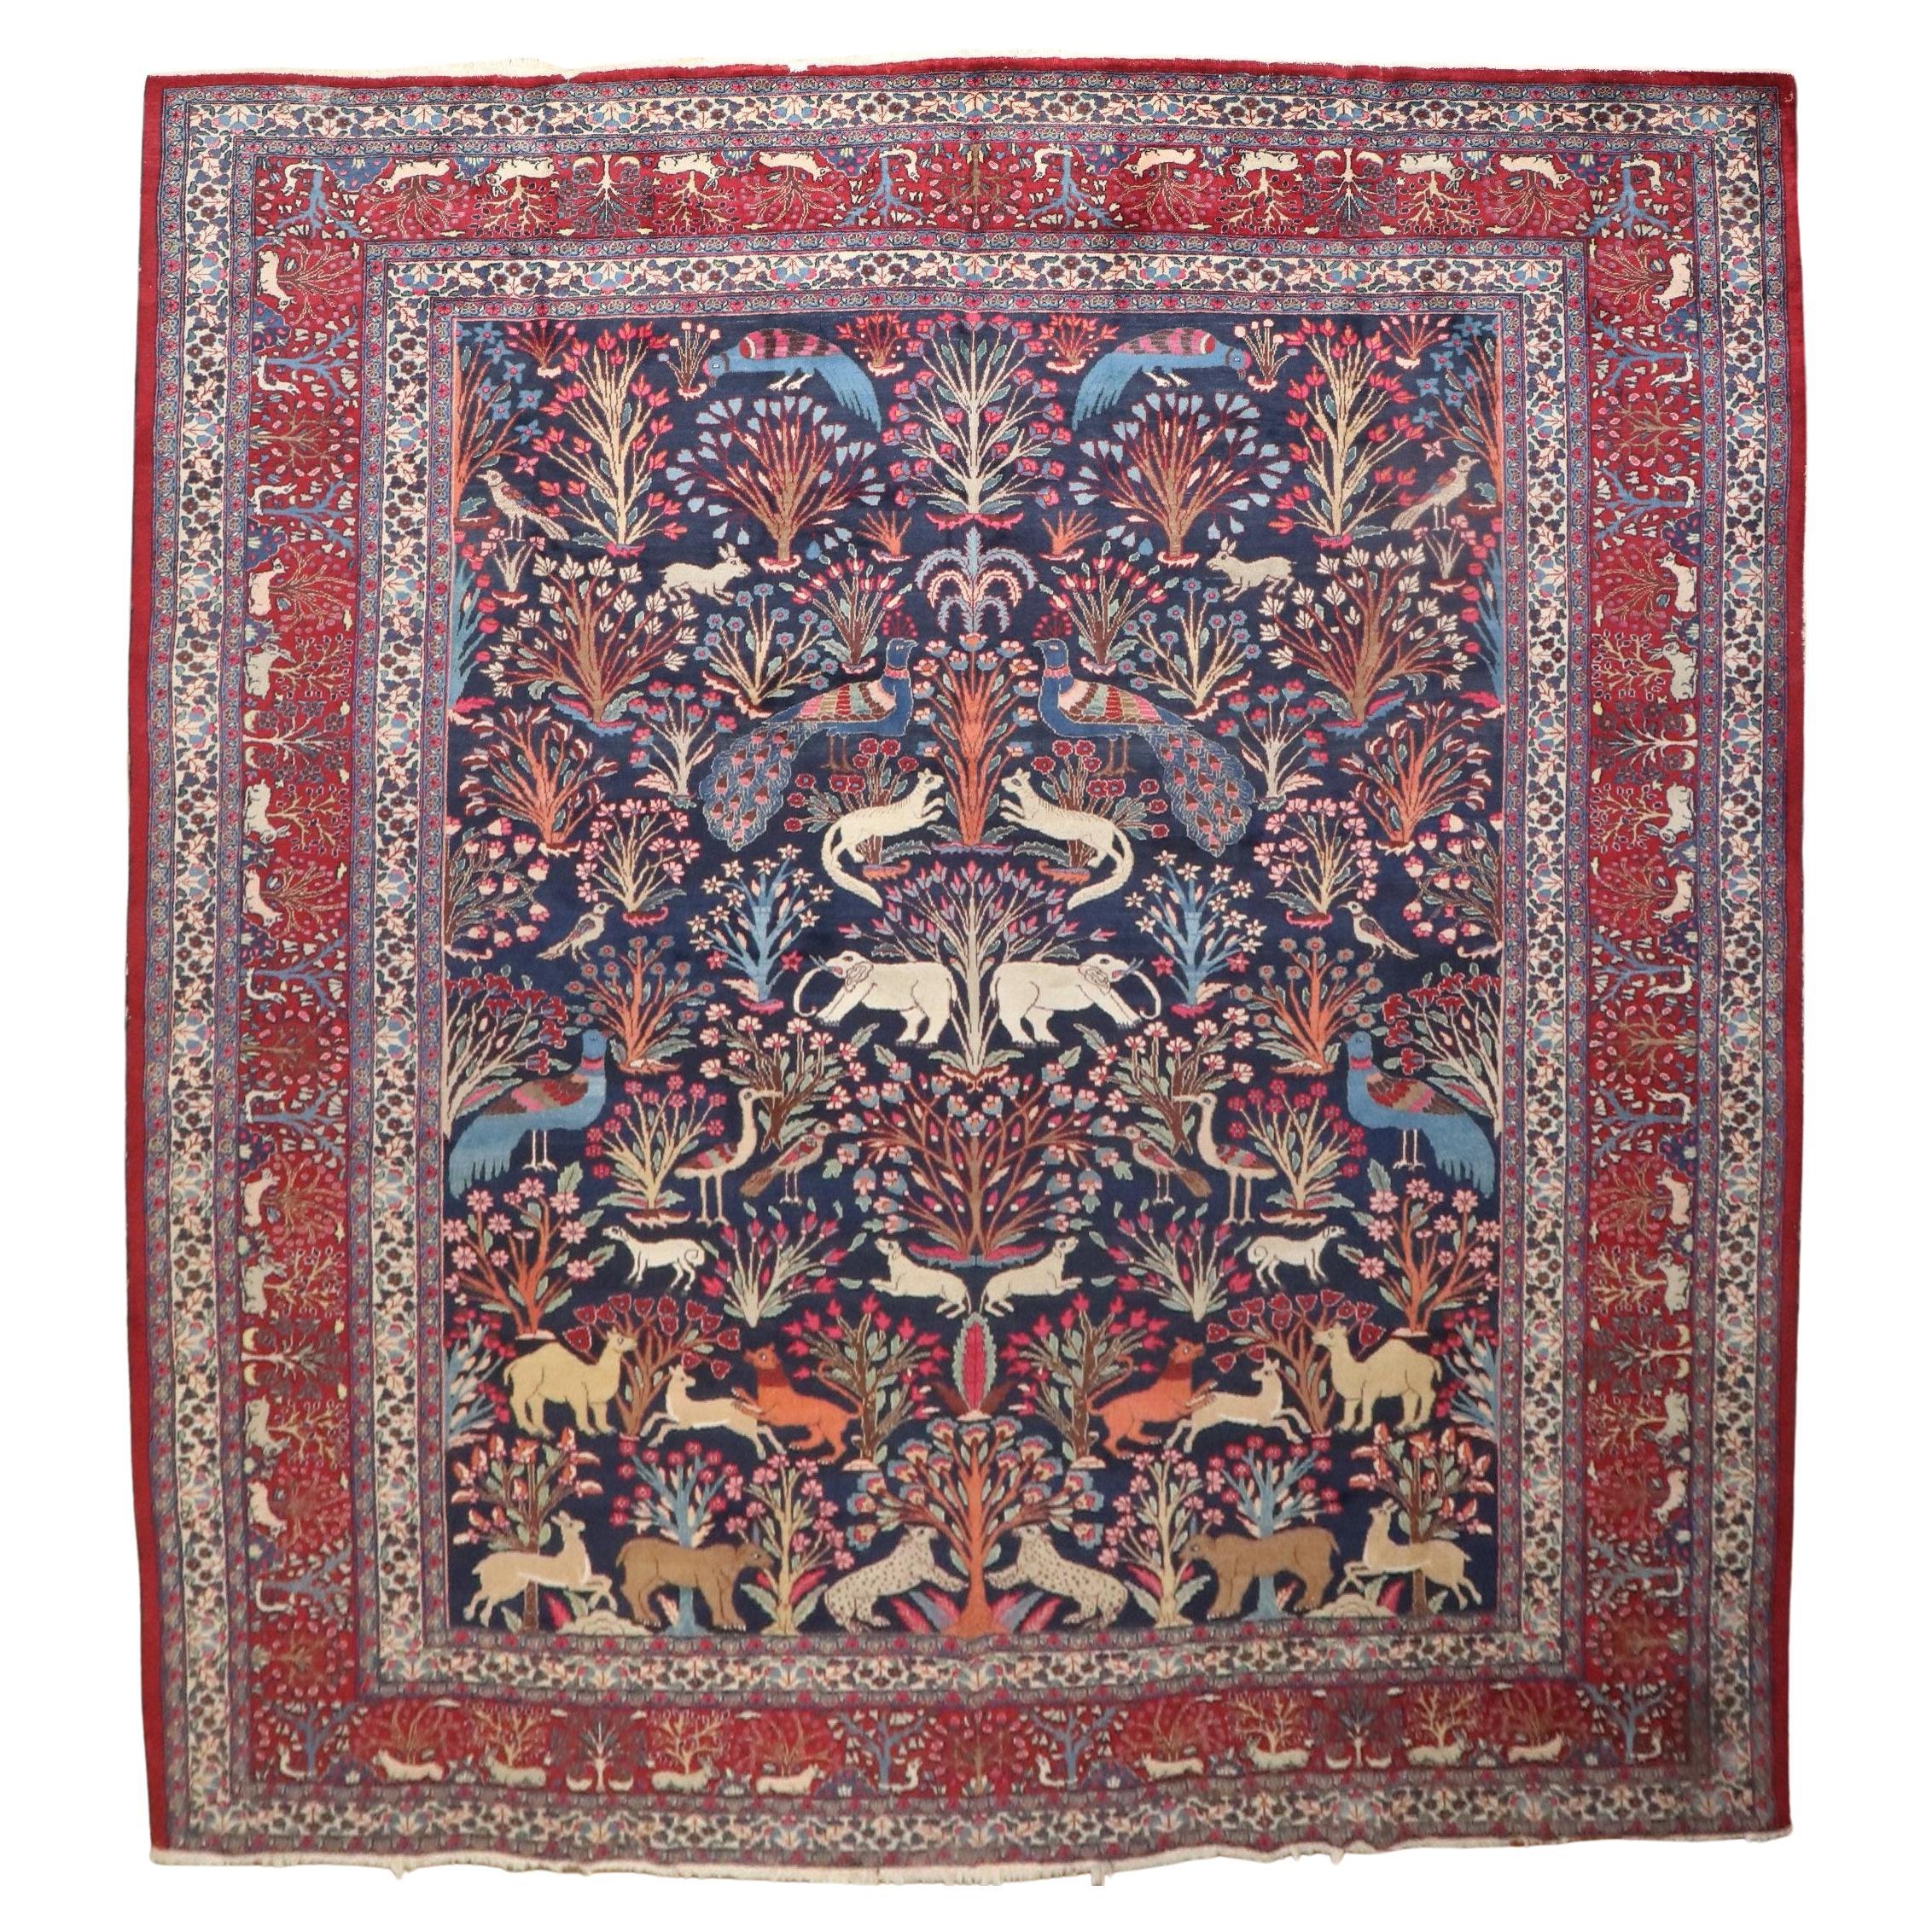 Juwelen getönter botanischer persischer Meshed Animal Pictorial-Teppich aus der Zabihi-Kollektion